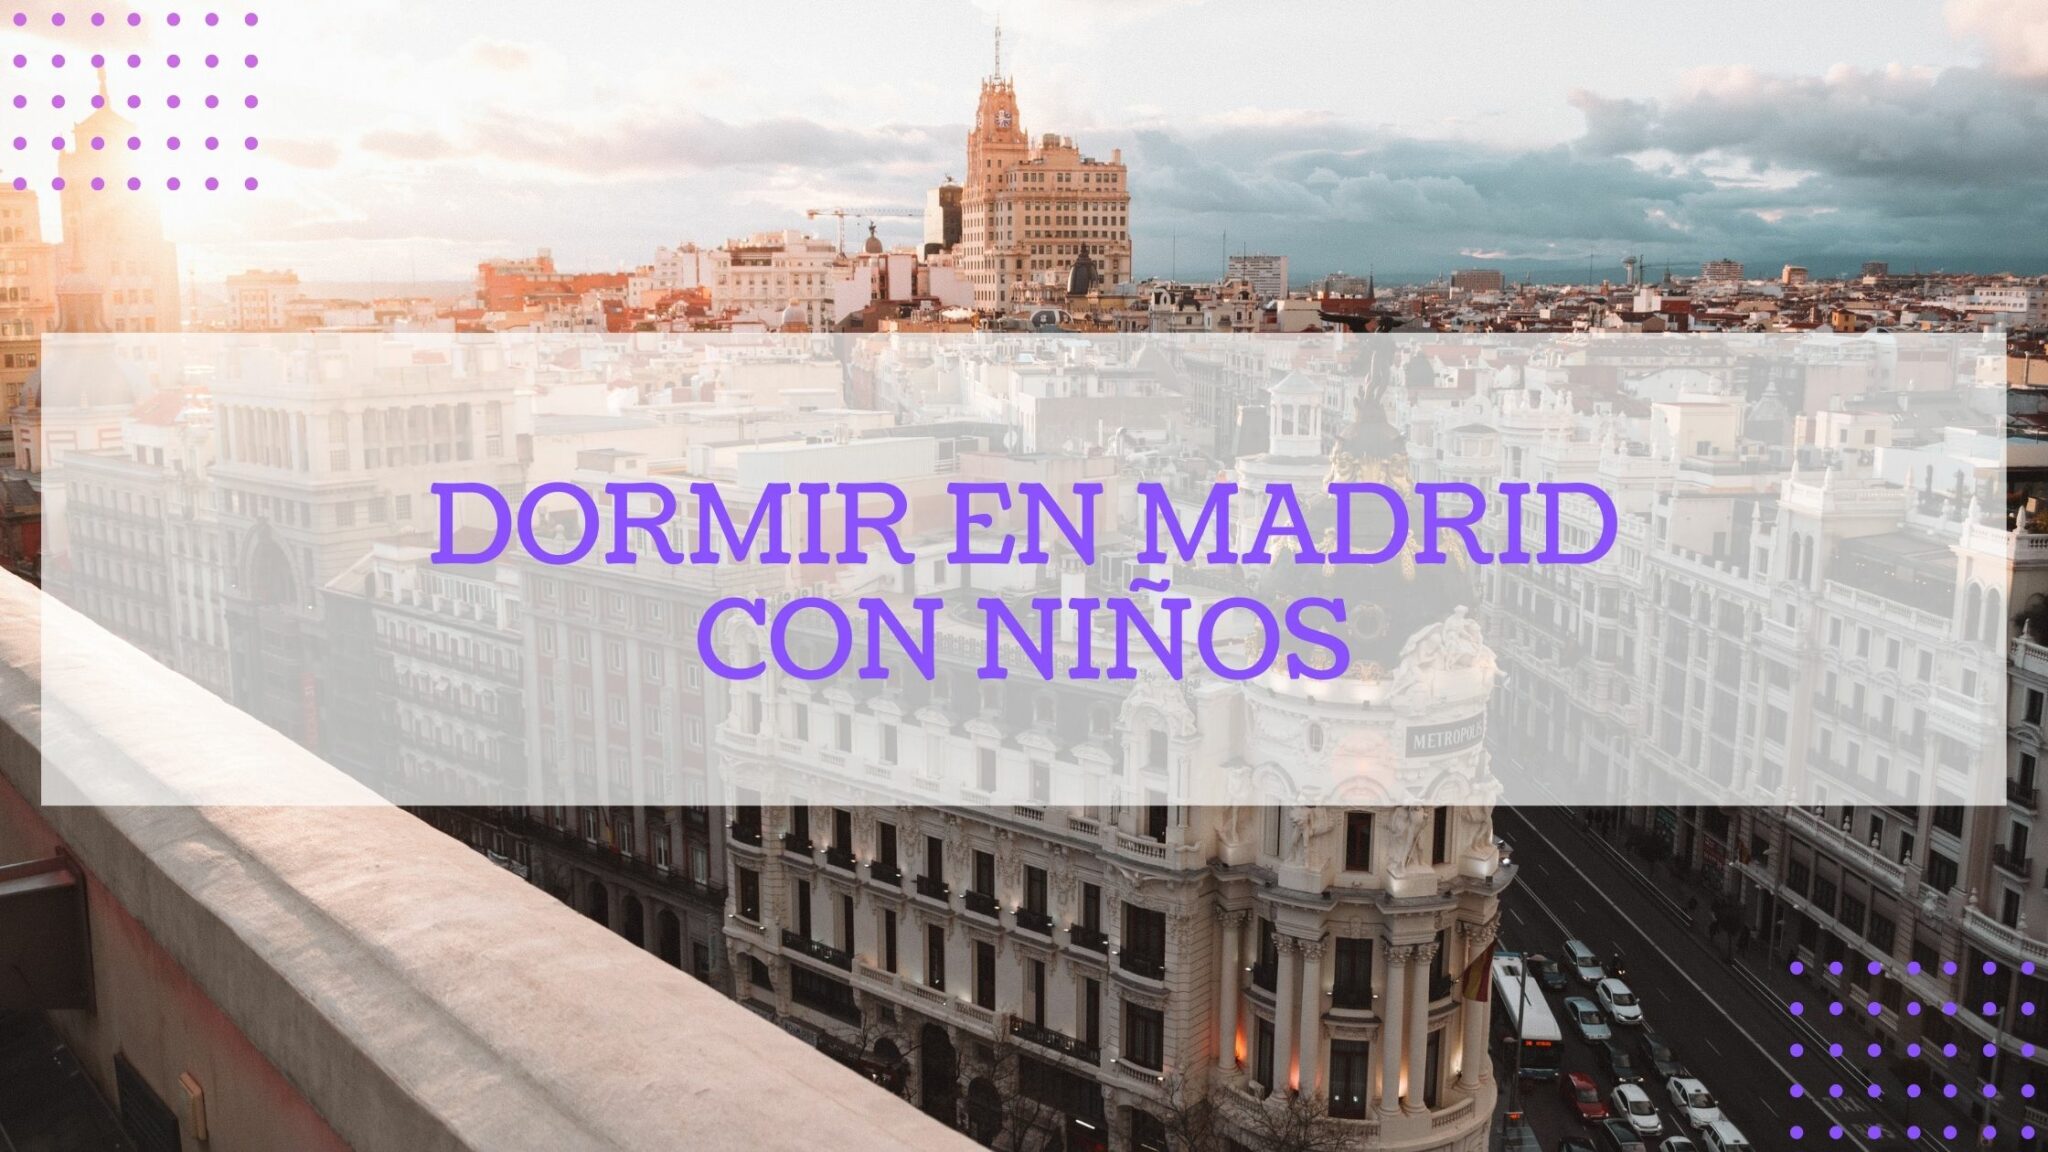 DORMIR EN MADRID CON NINOS scaled - Inicio